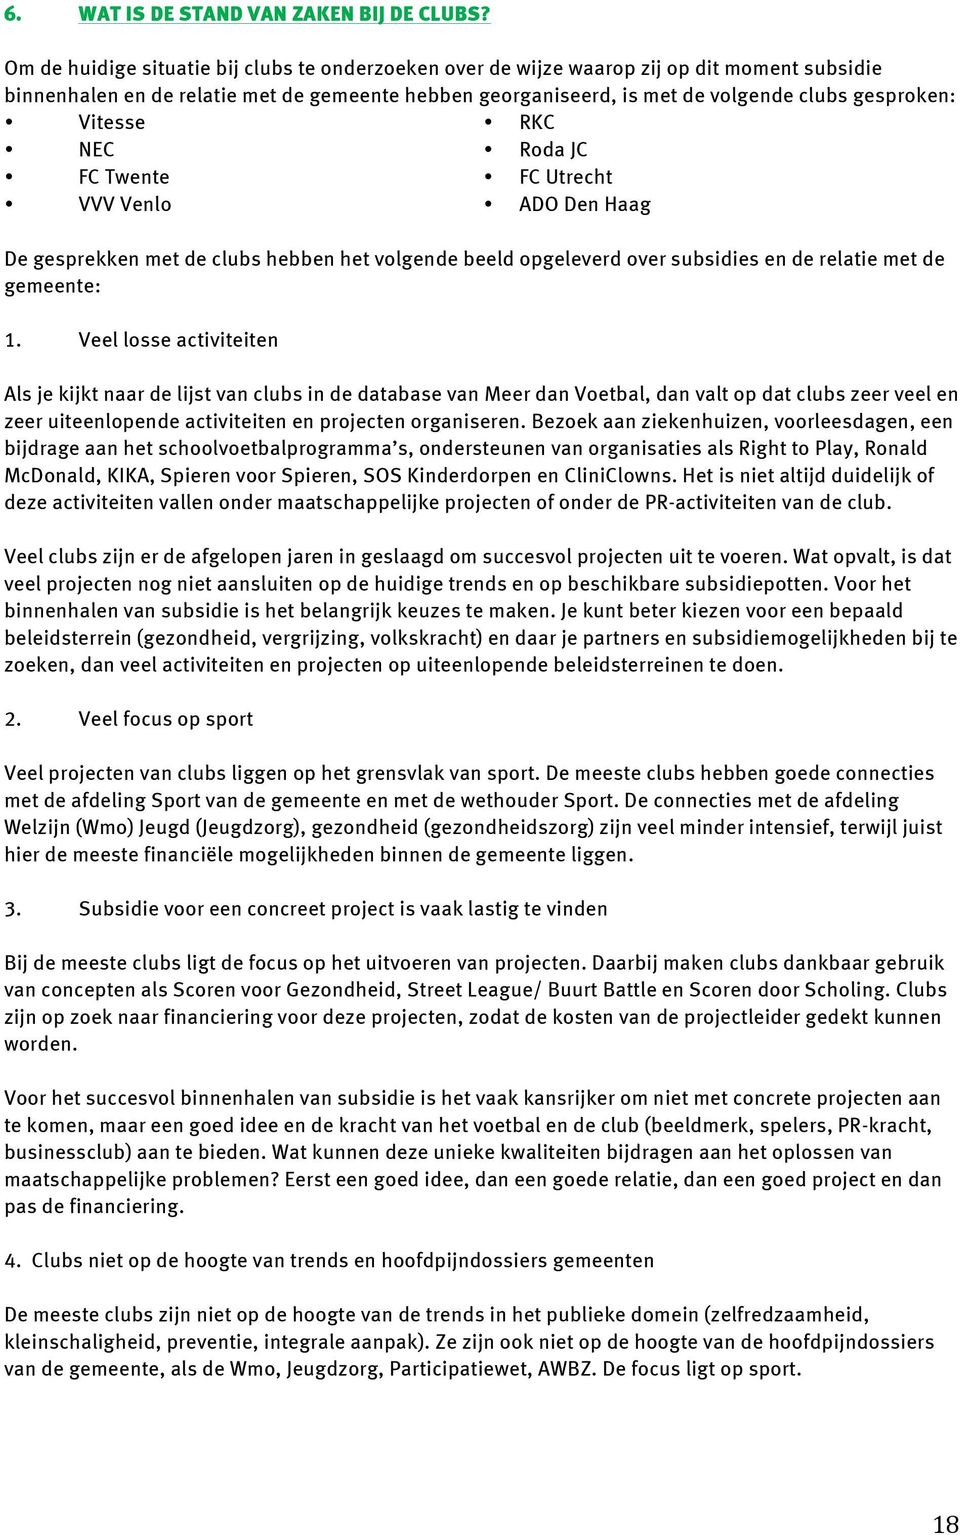 Vitesse RKC NEC Roda JC FC Twente FC Utrecht VVV Venlo ADO Den Haag De gesprekken met de clubs hebben het volgende beeld opgeleverd over subsidies en de relatie met de gemeente: 1.